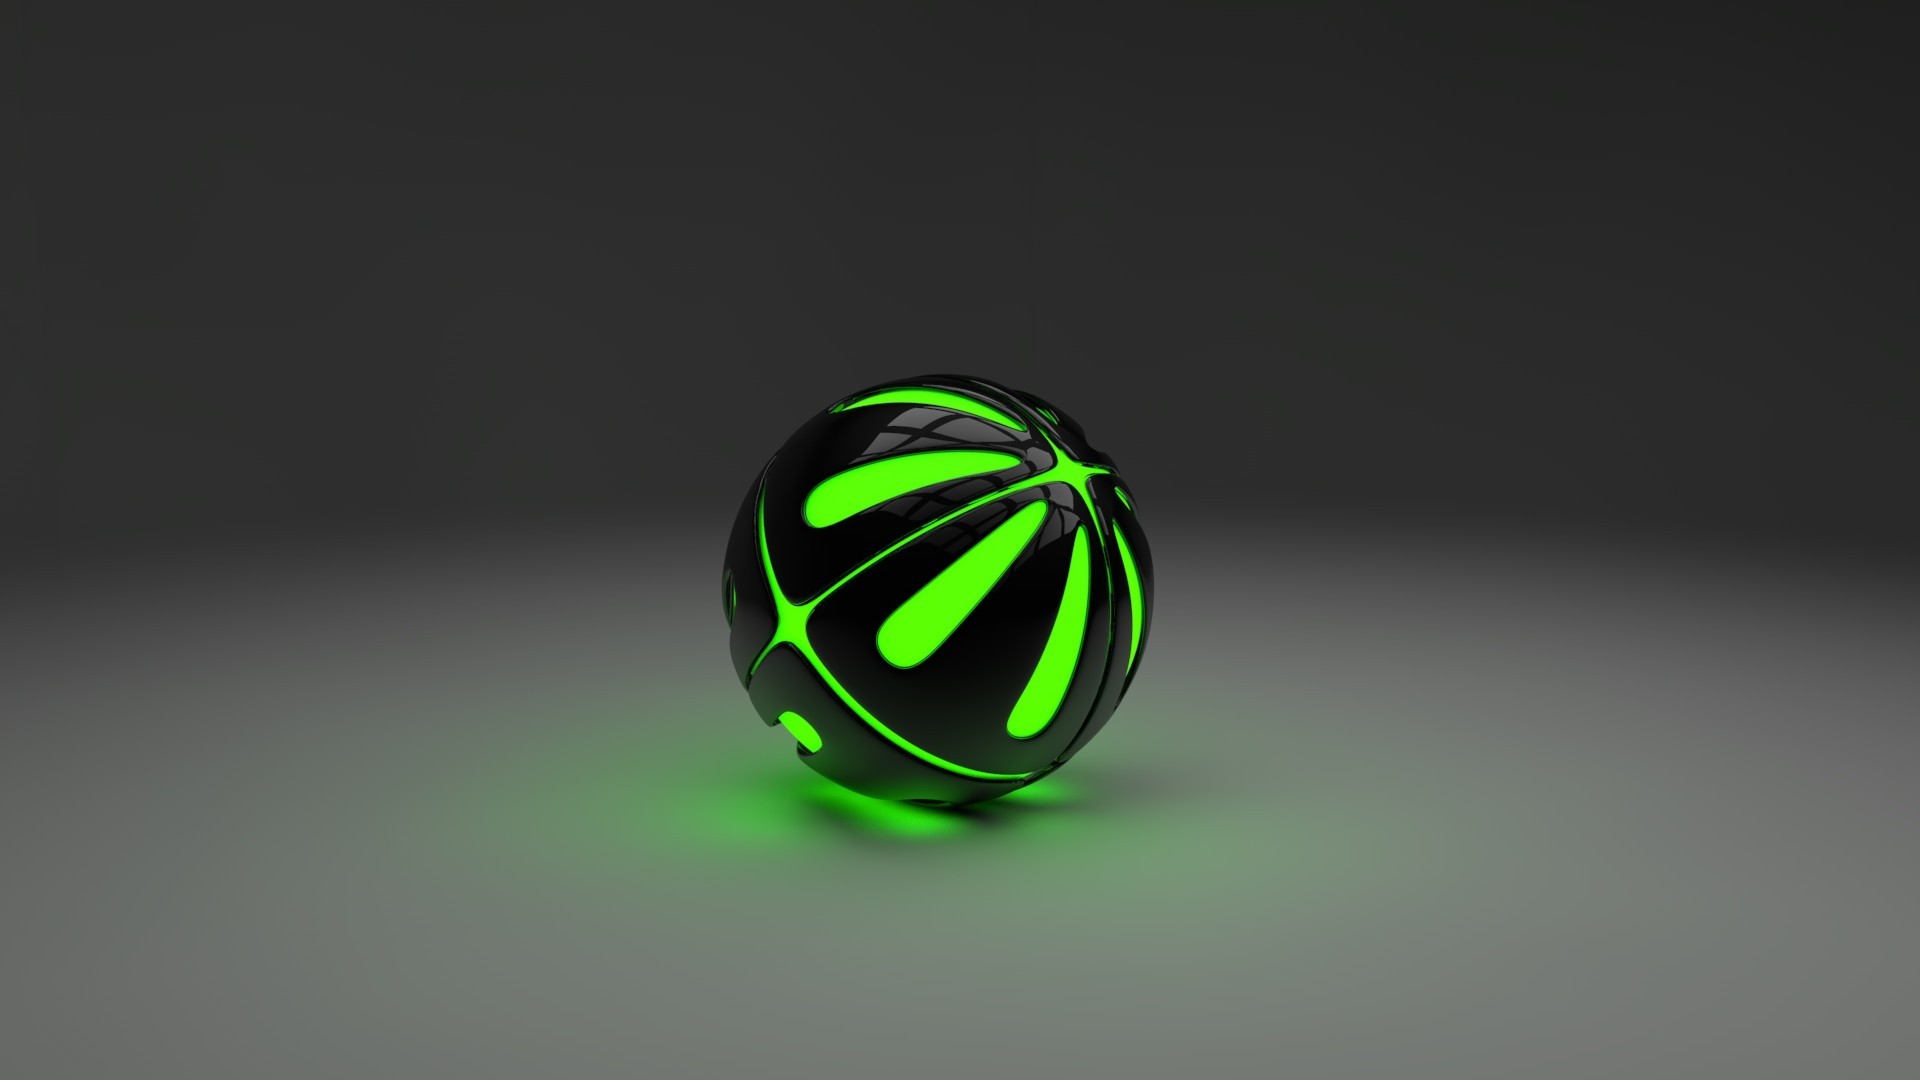 Render Balls Minimalism Sphere Simple Background Digital Art Simple Green 1920x1080